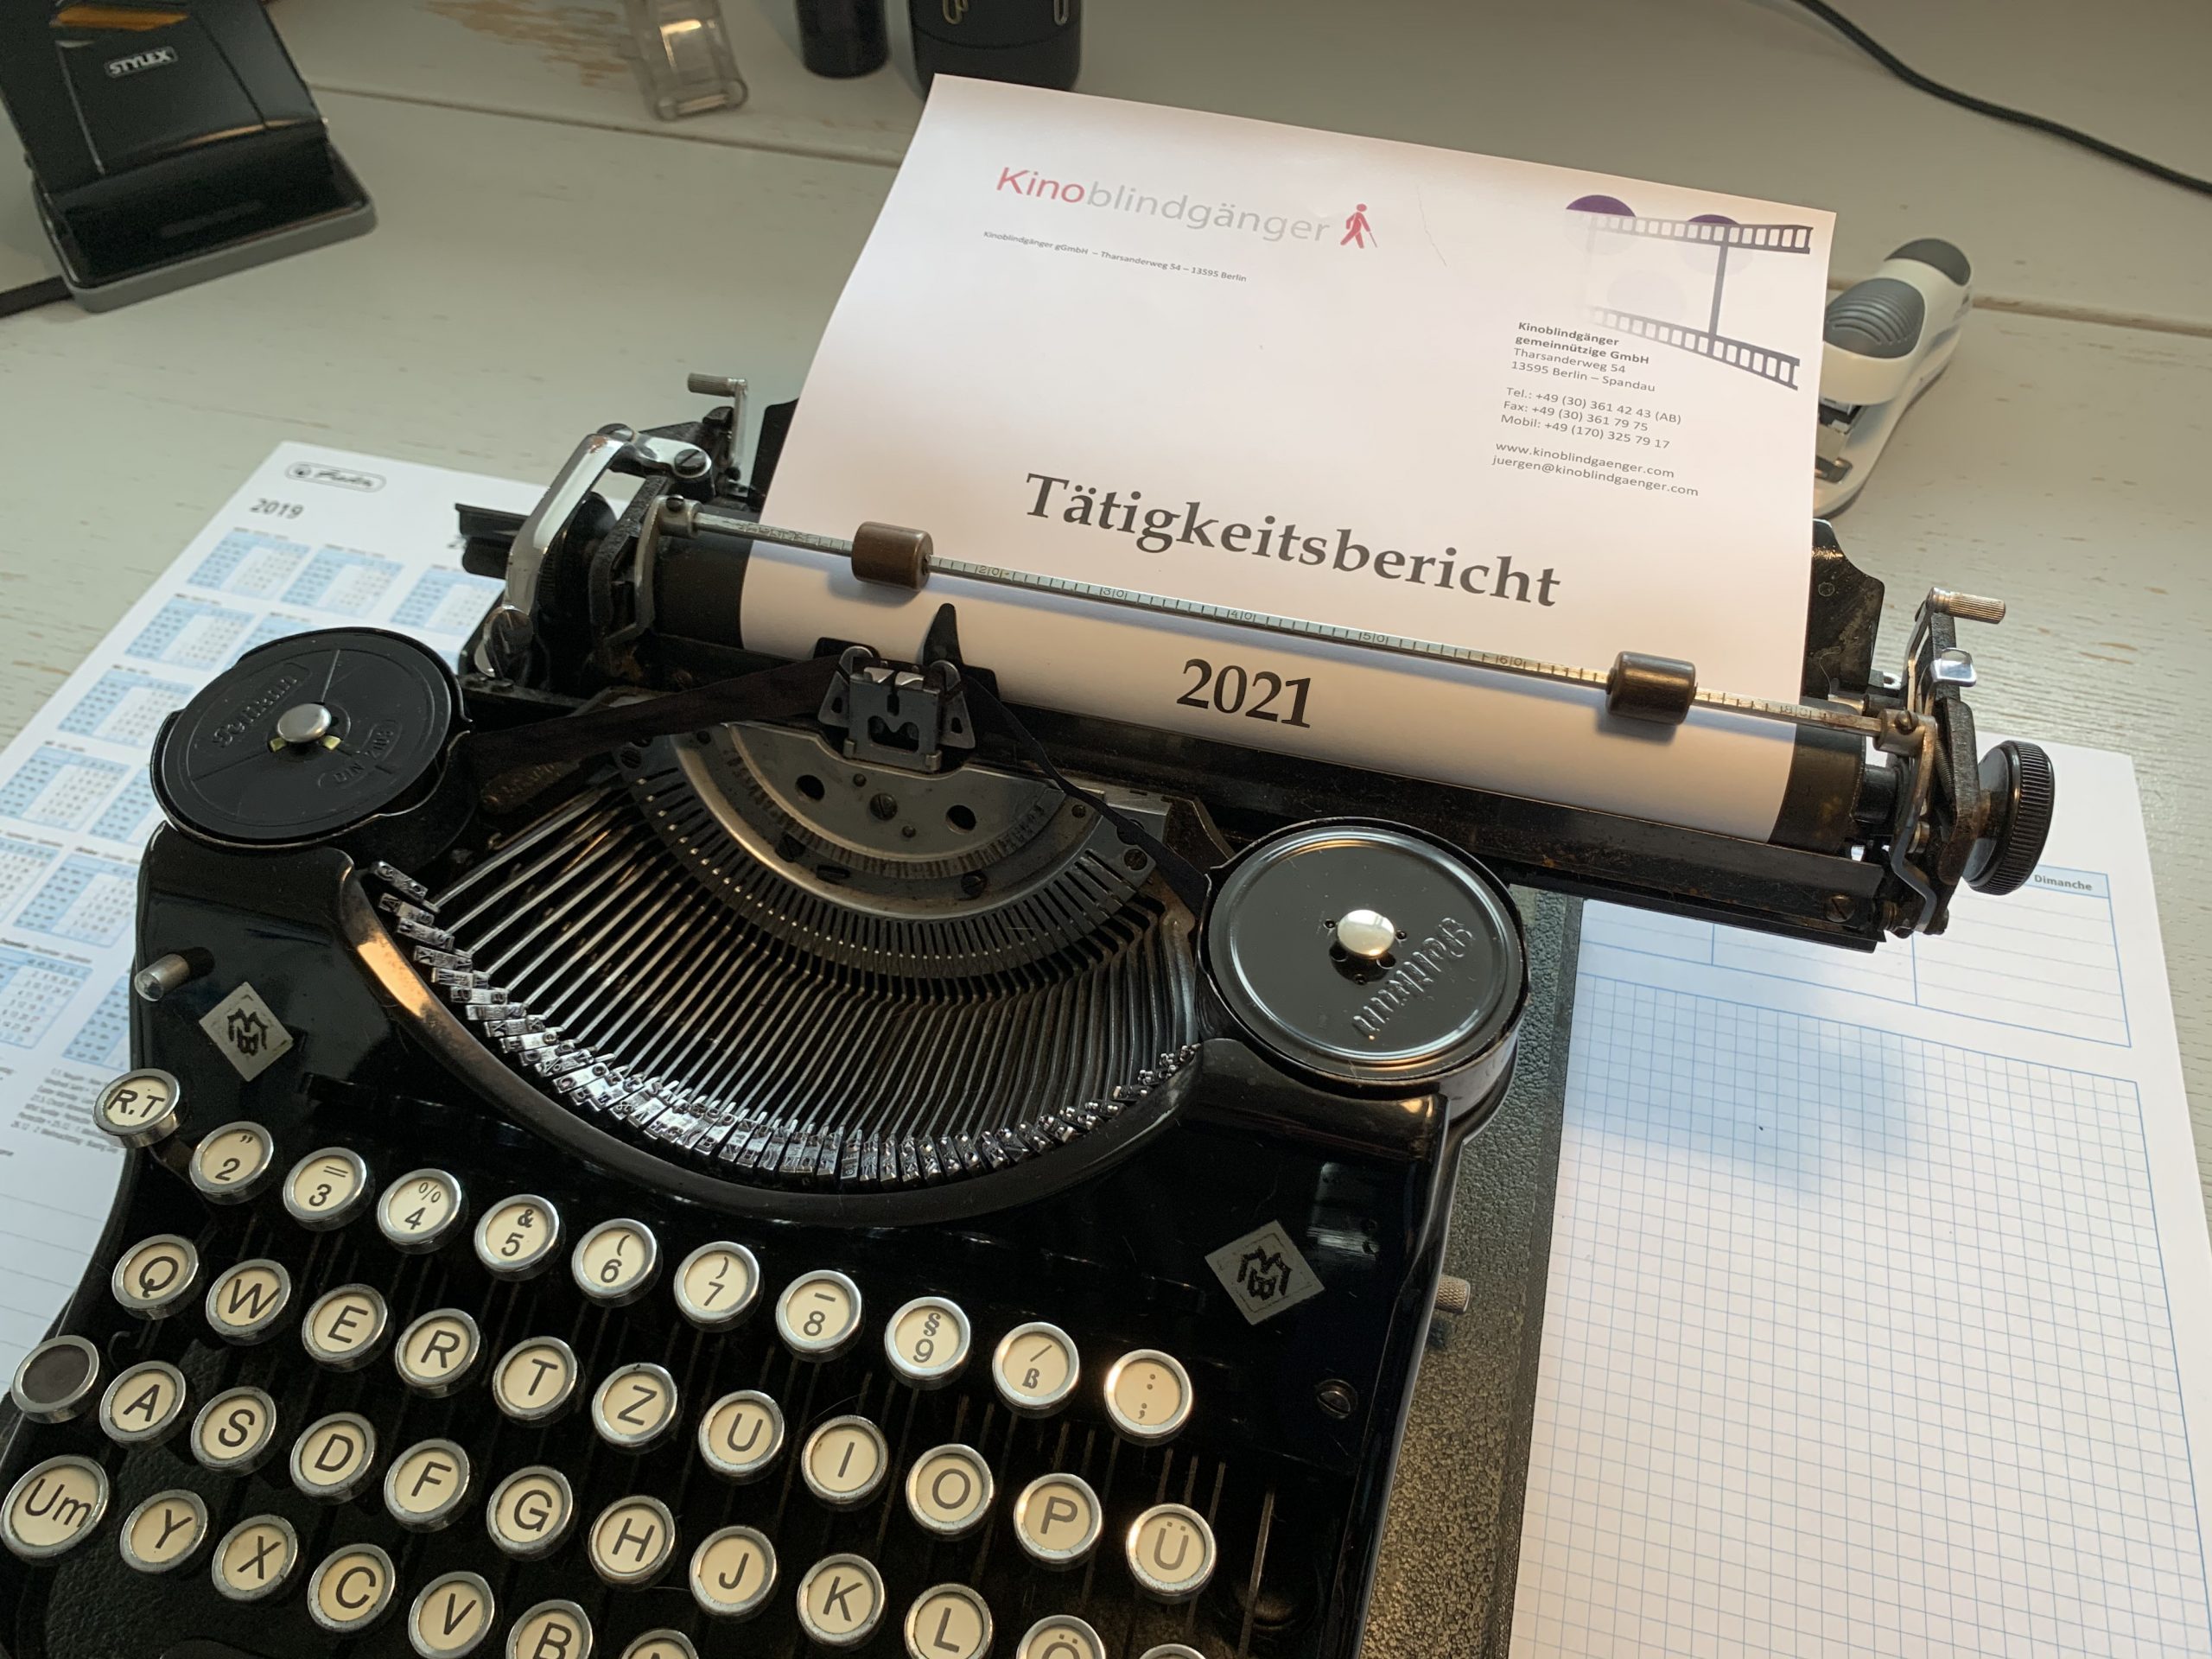 Eine alte schwarze Schreibmaschine mit Typenhebeln. Eingespannt ist ein Bogen mit der Überschrift "Tätigkeitsbericht 2021".